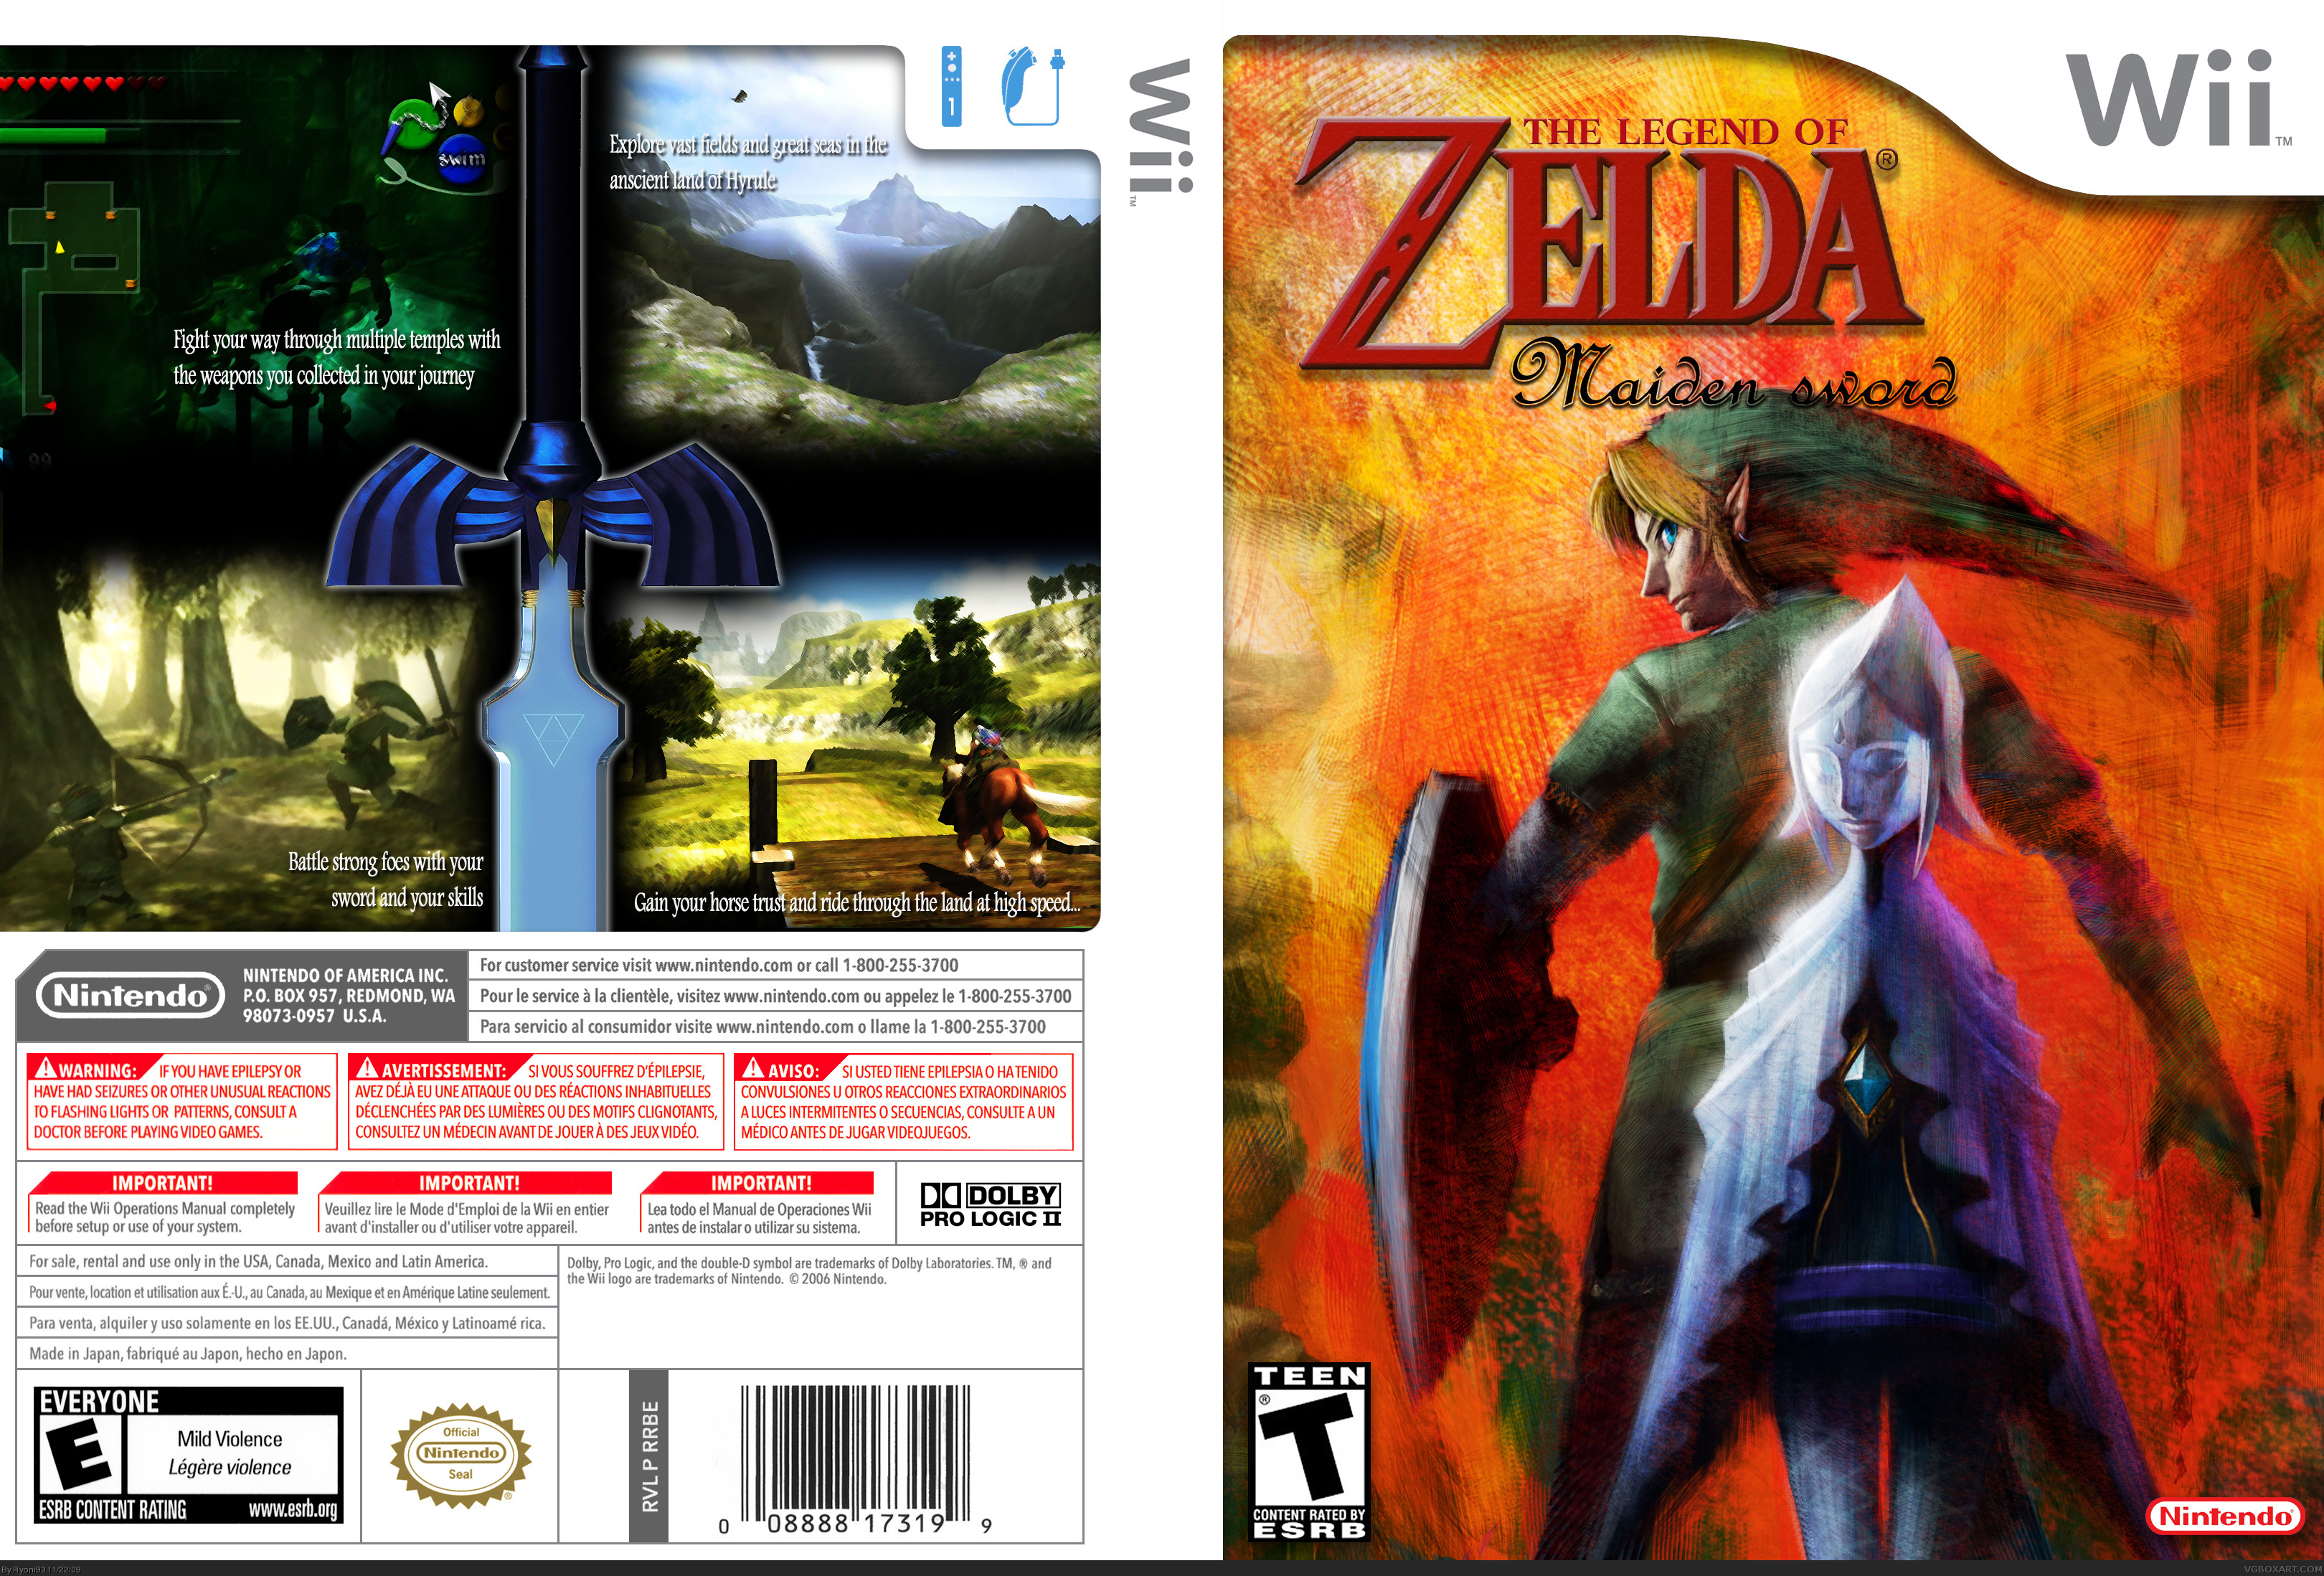 The legend of Zelda: Maiden sword box cover